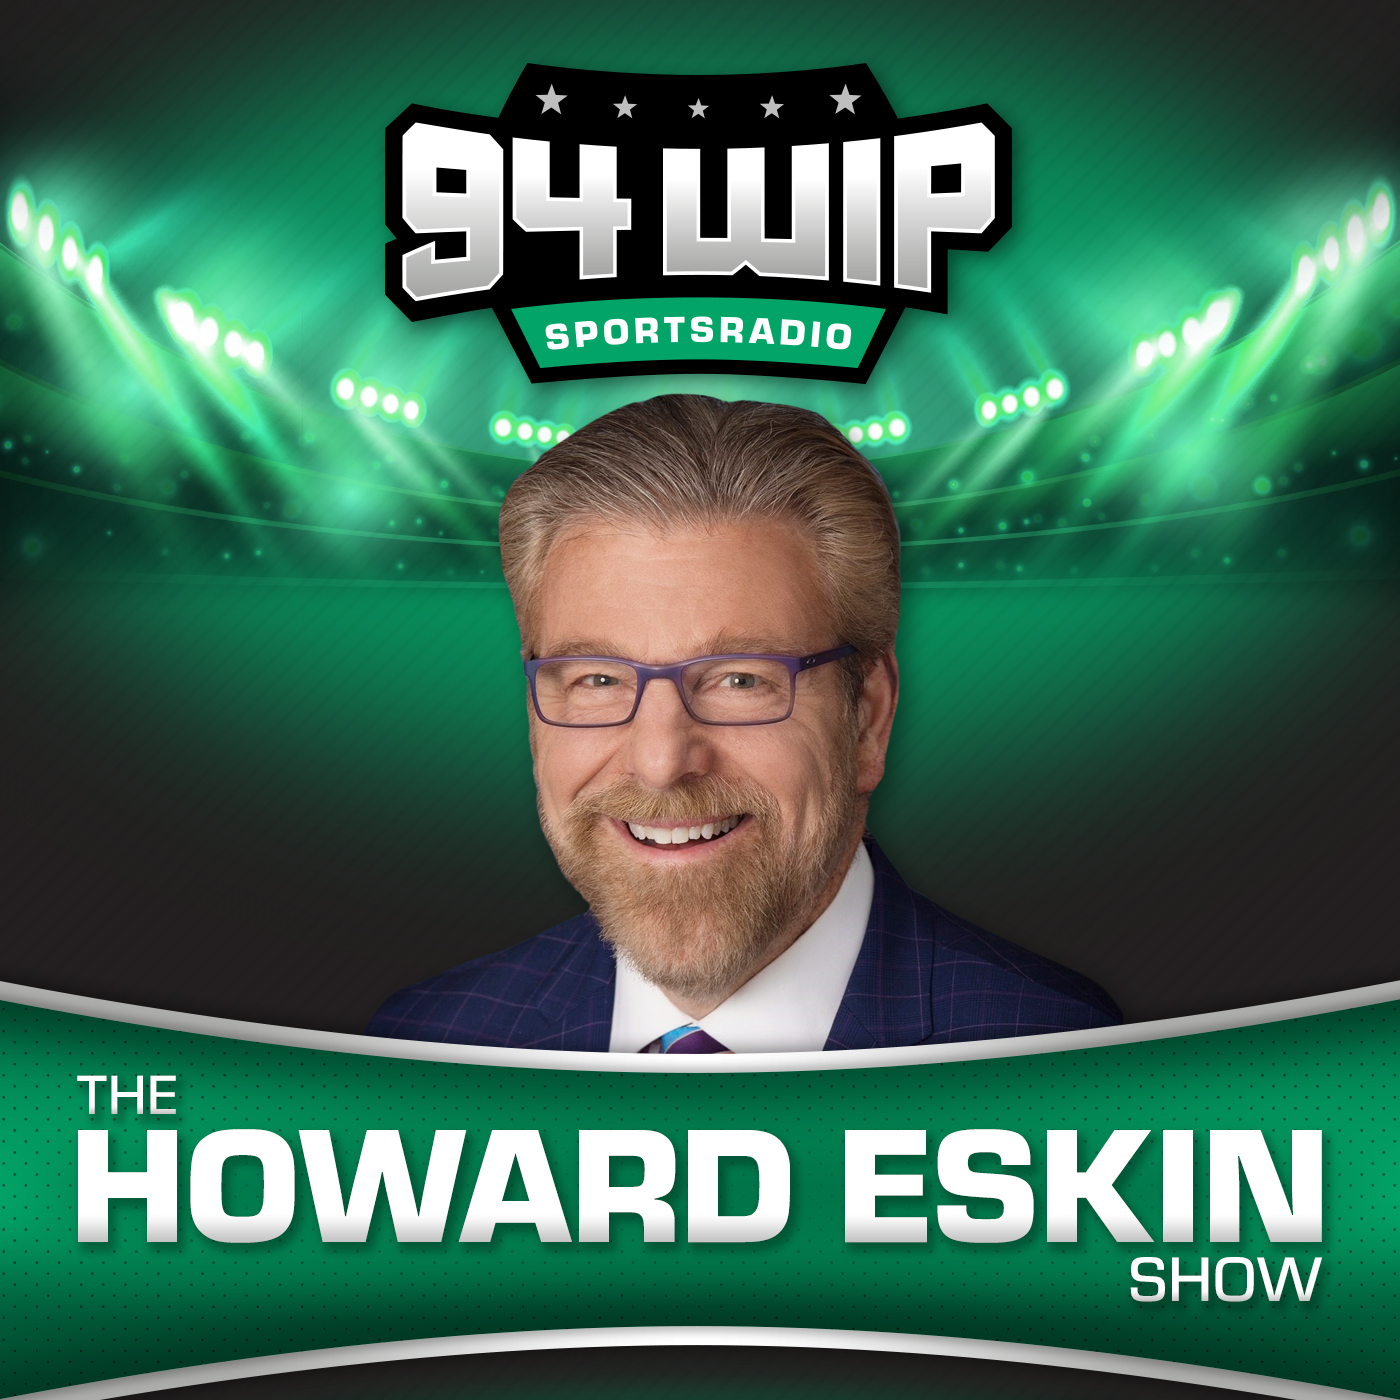 The Howard Eskin Show 07_31_21